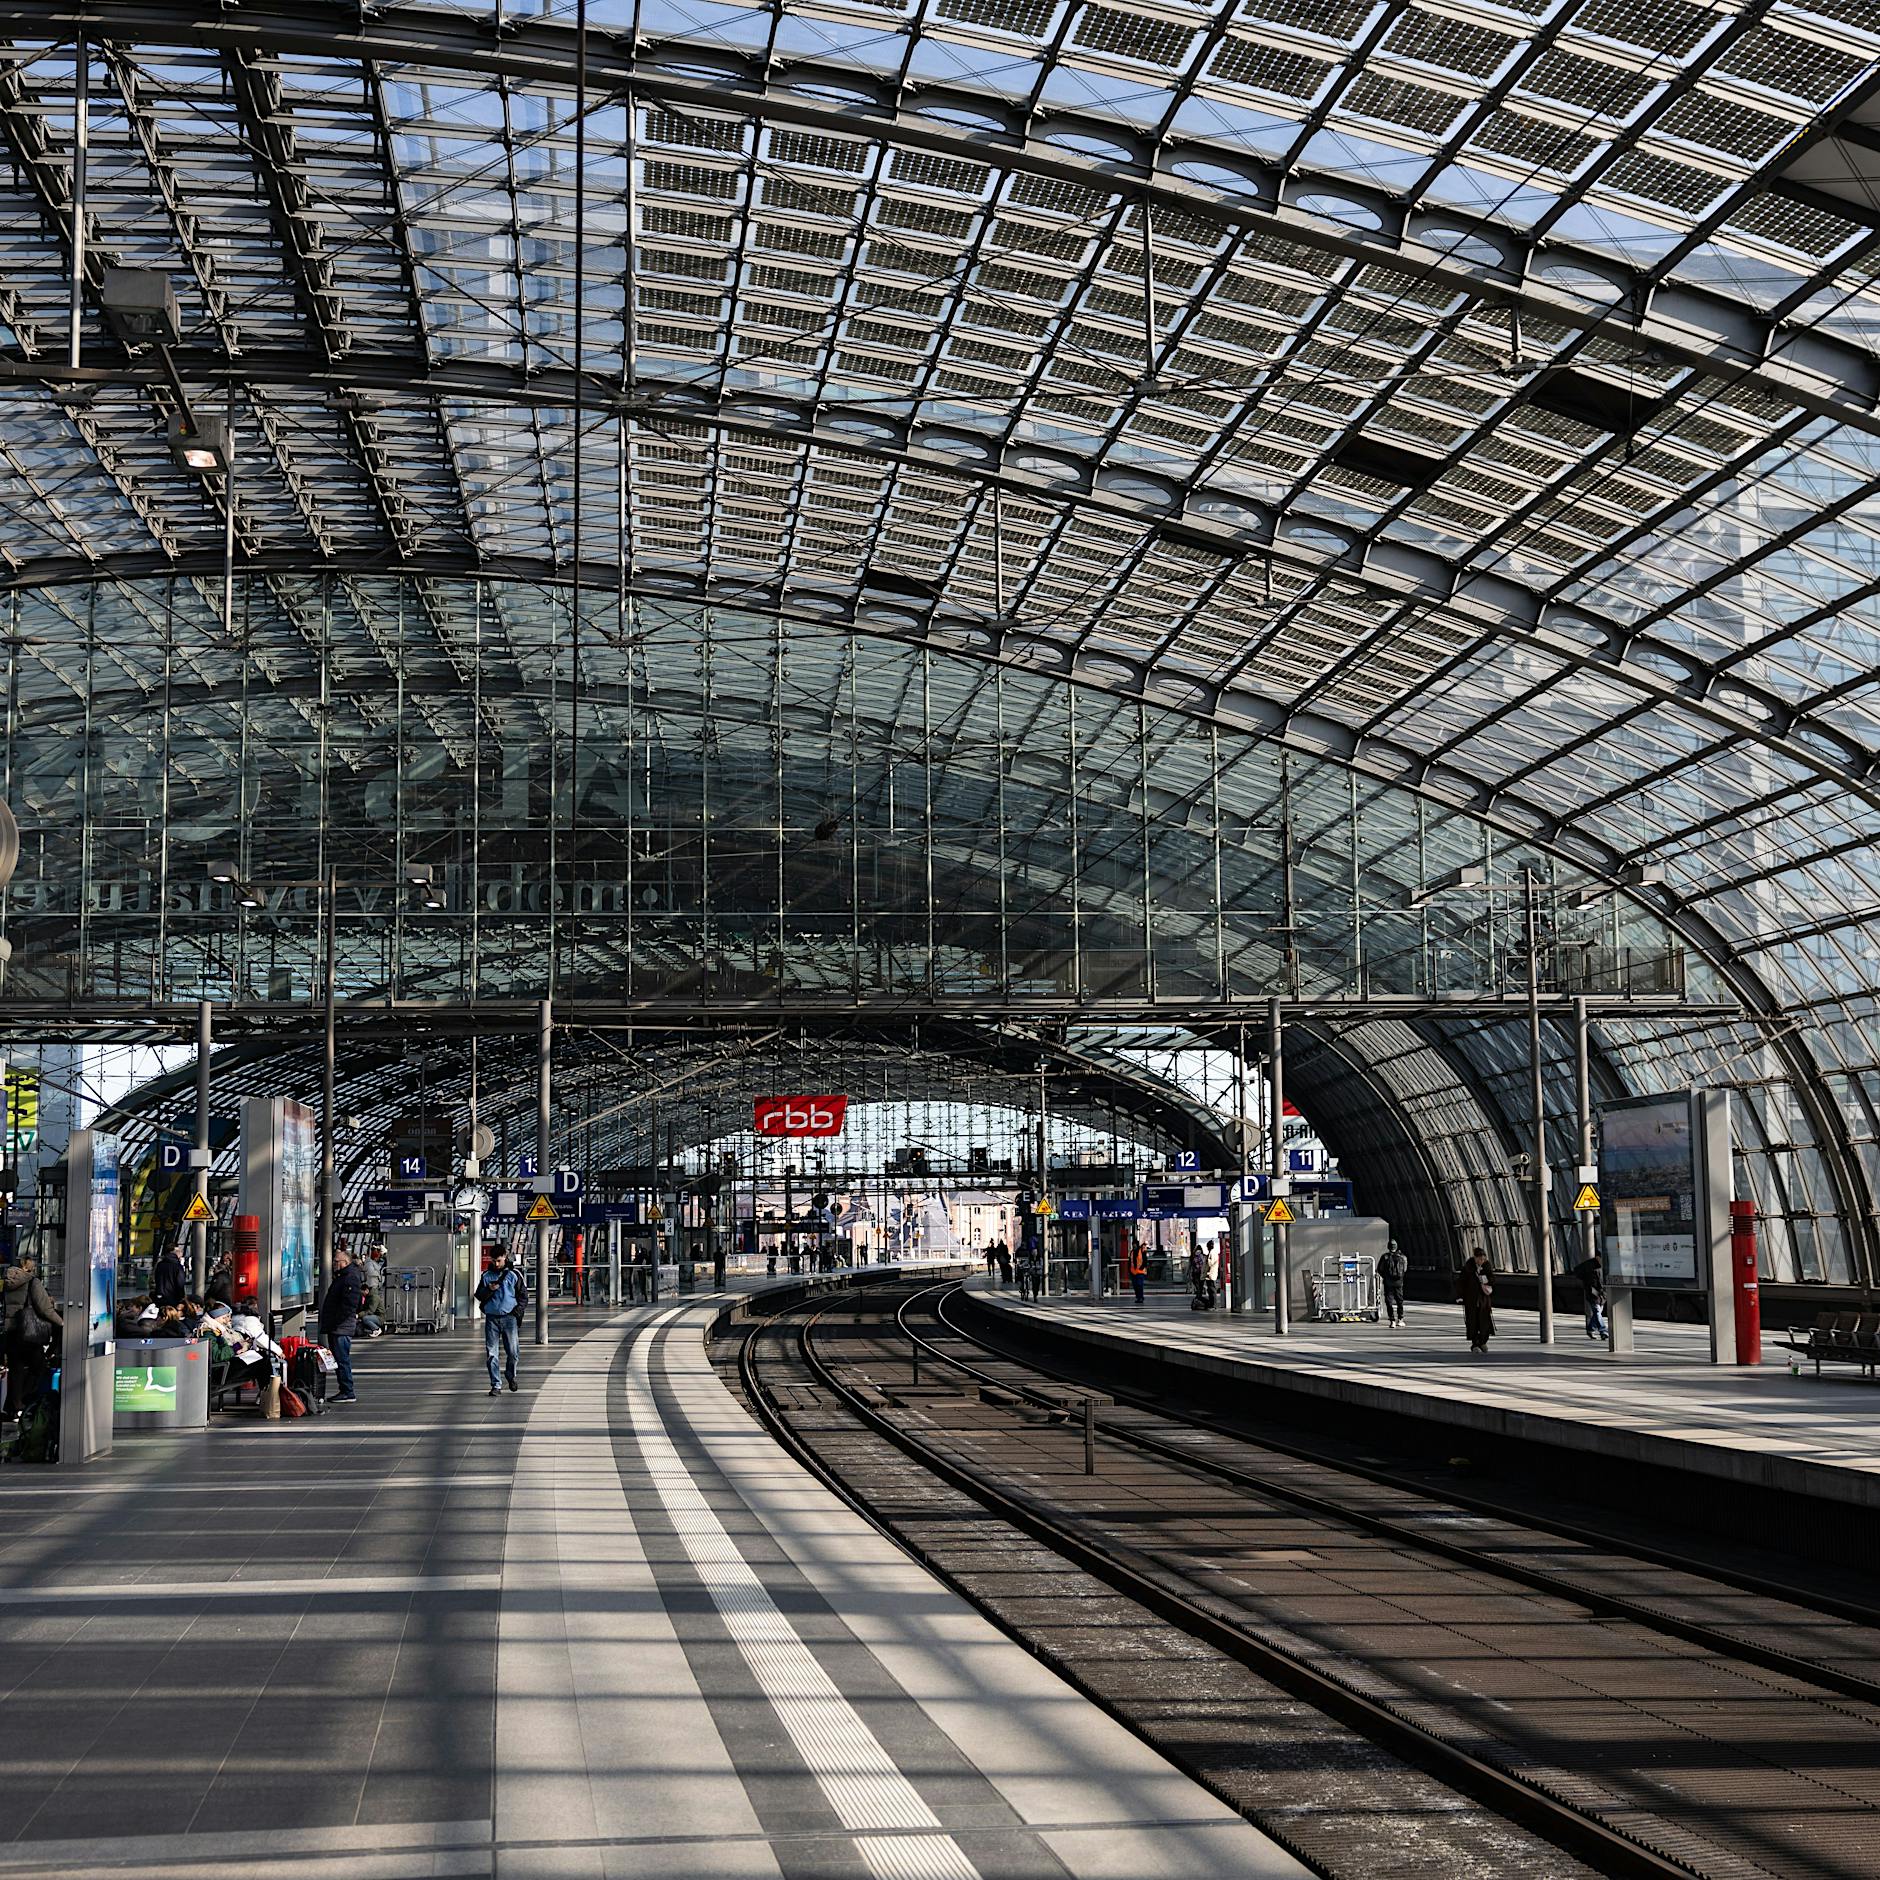 Störungen bei der Bahn: Ausfälle zwischen Berlin - München und Berlin - Frankfurt